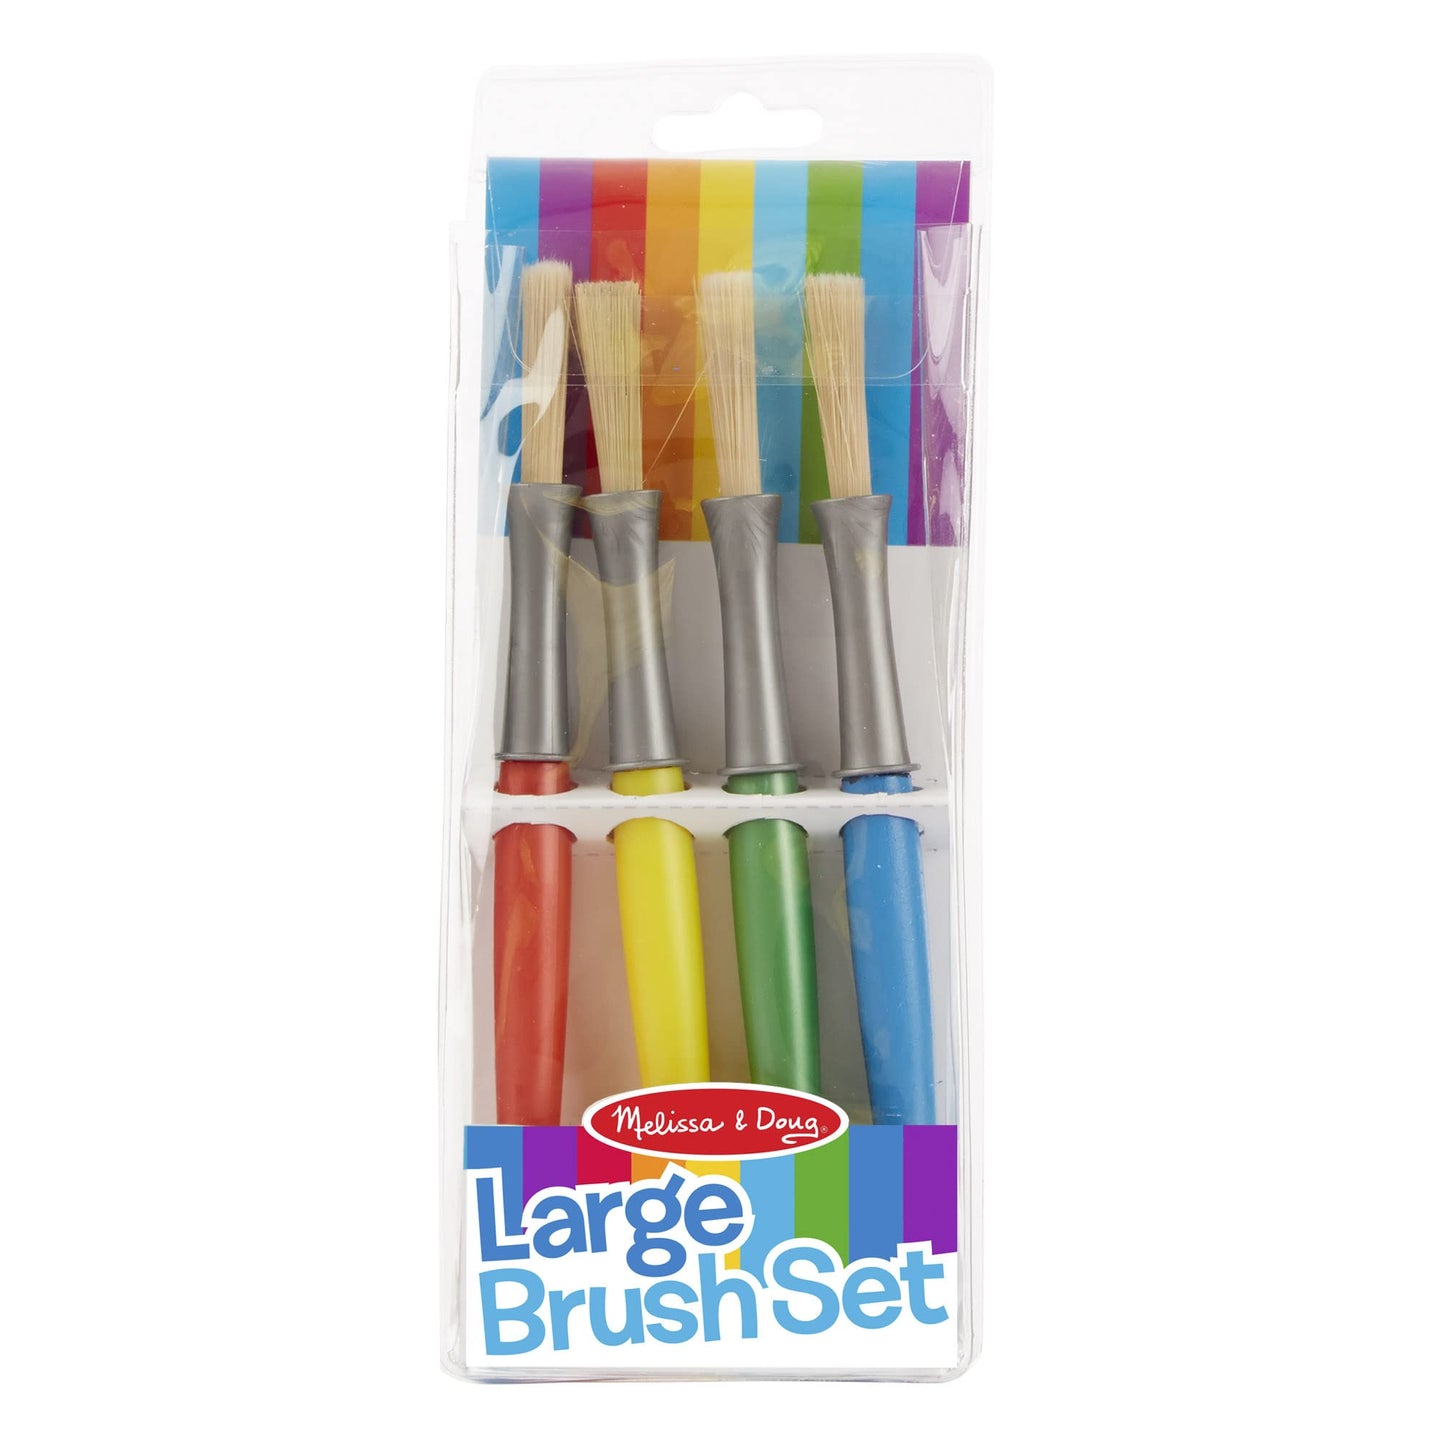 Melissa & Doug Large Paint Brush Set With 4 Kids' Paint Brushes